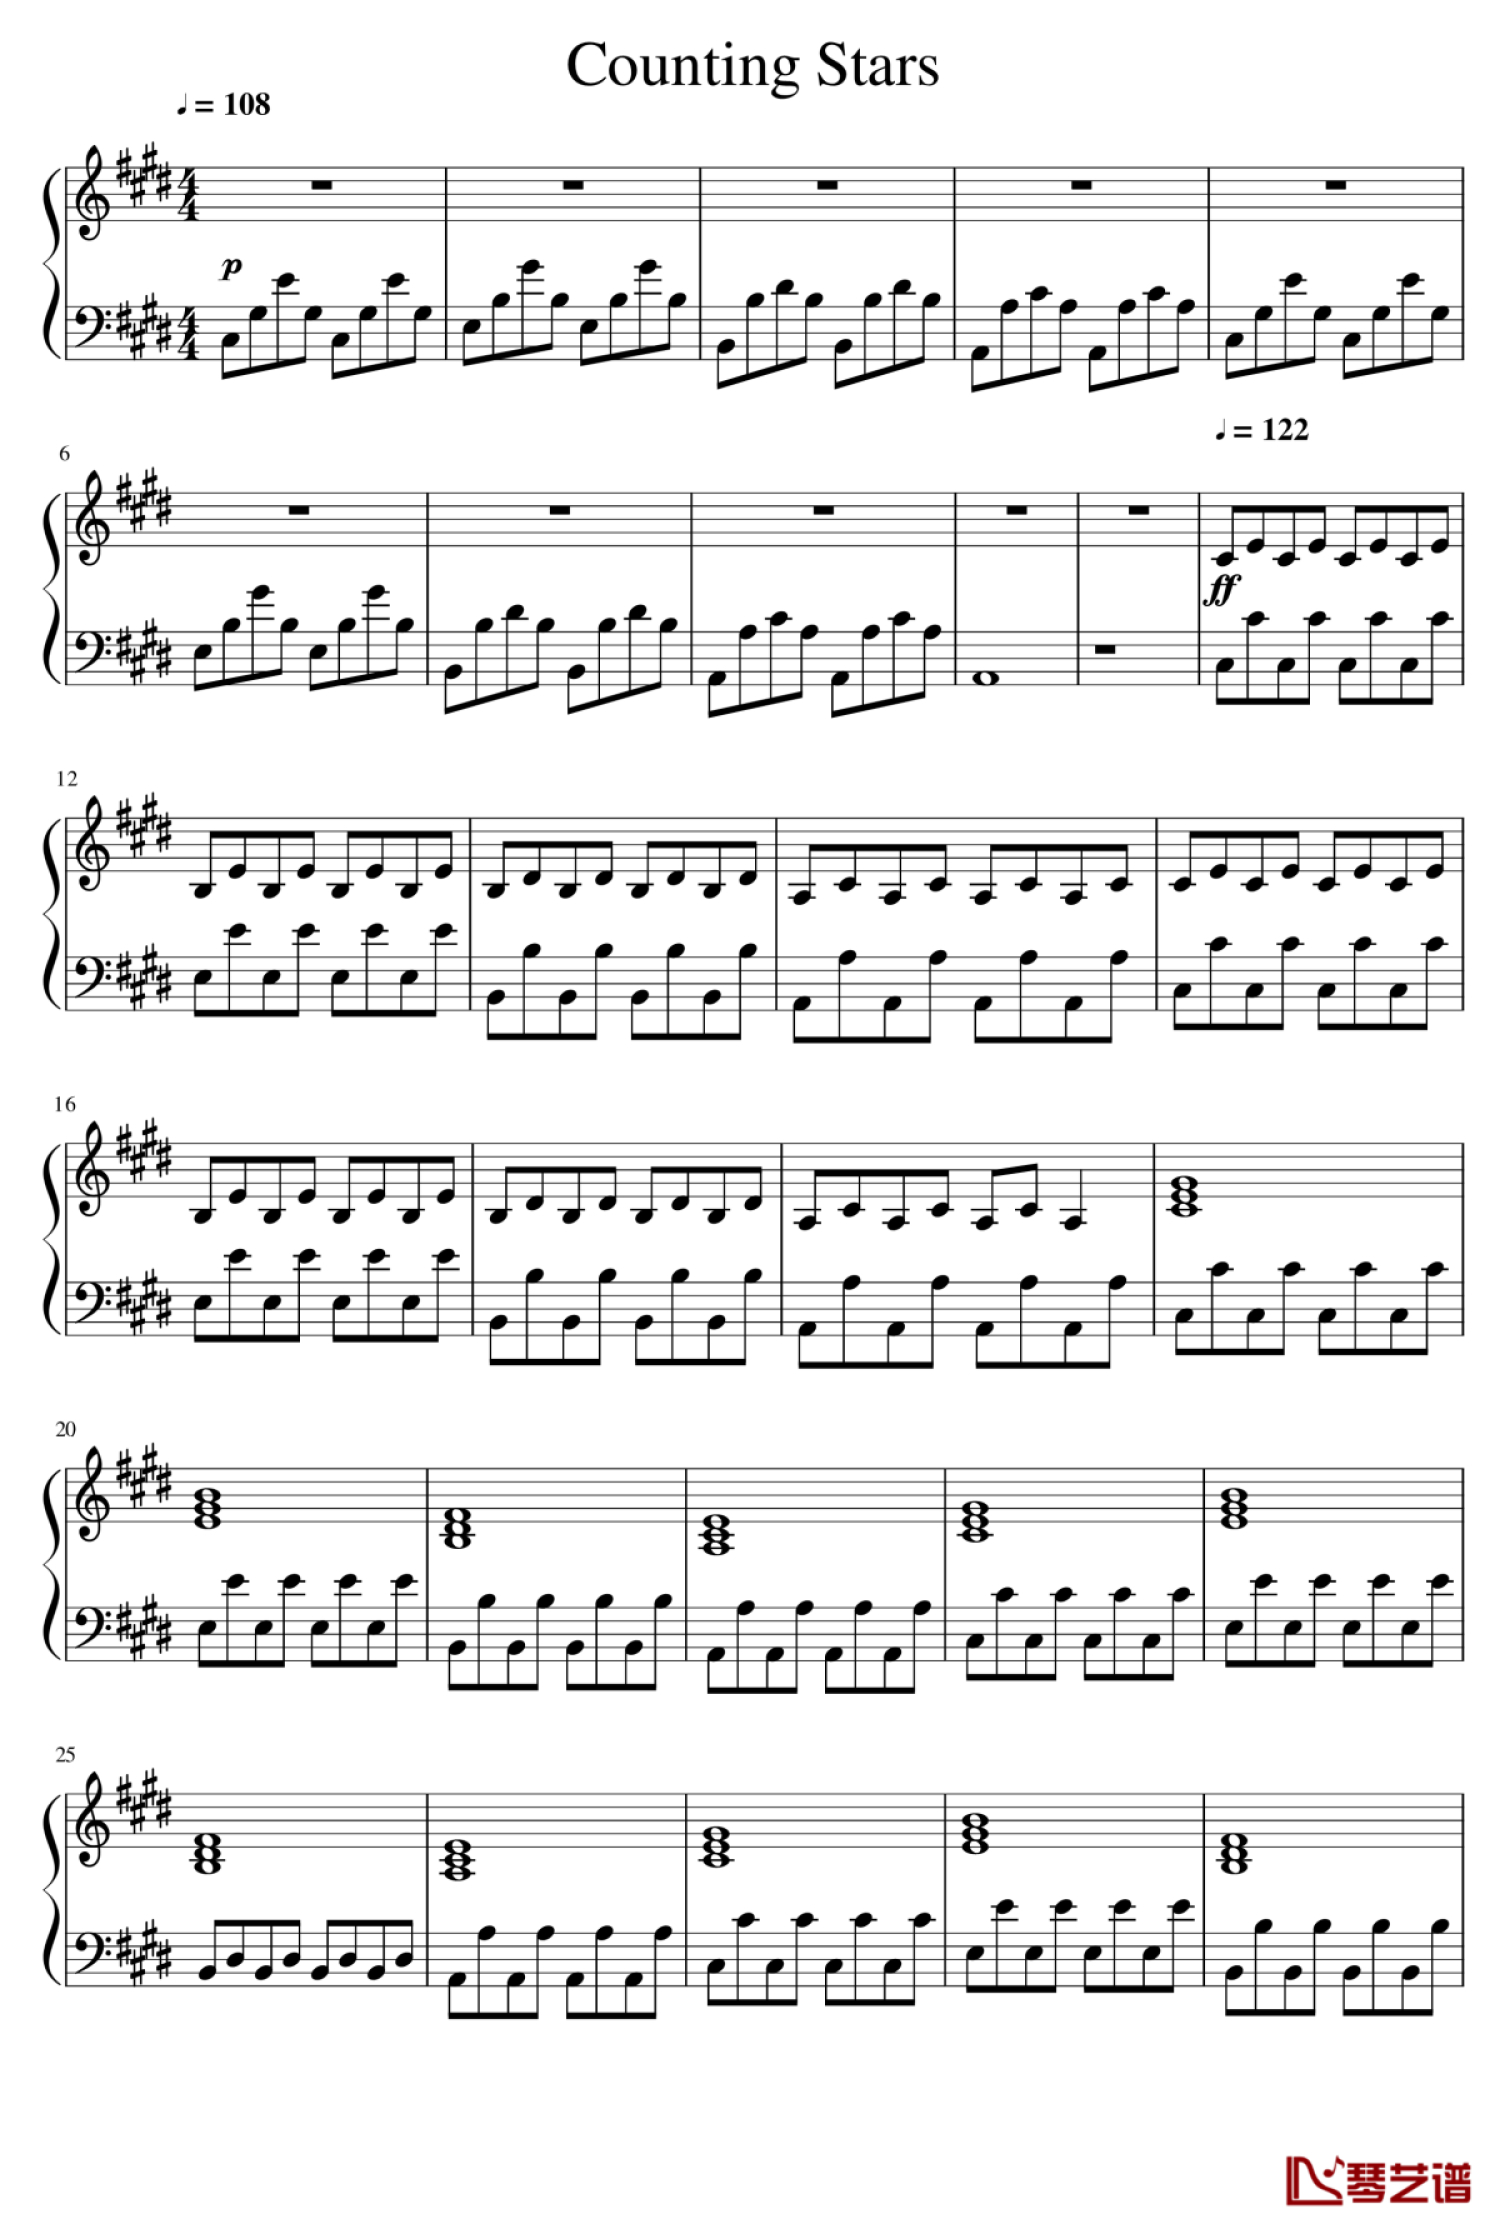 countingstars小提琴谱图片